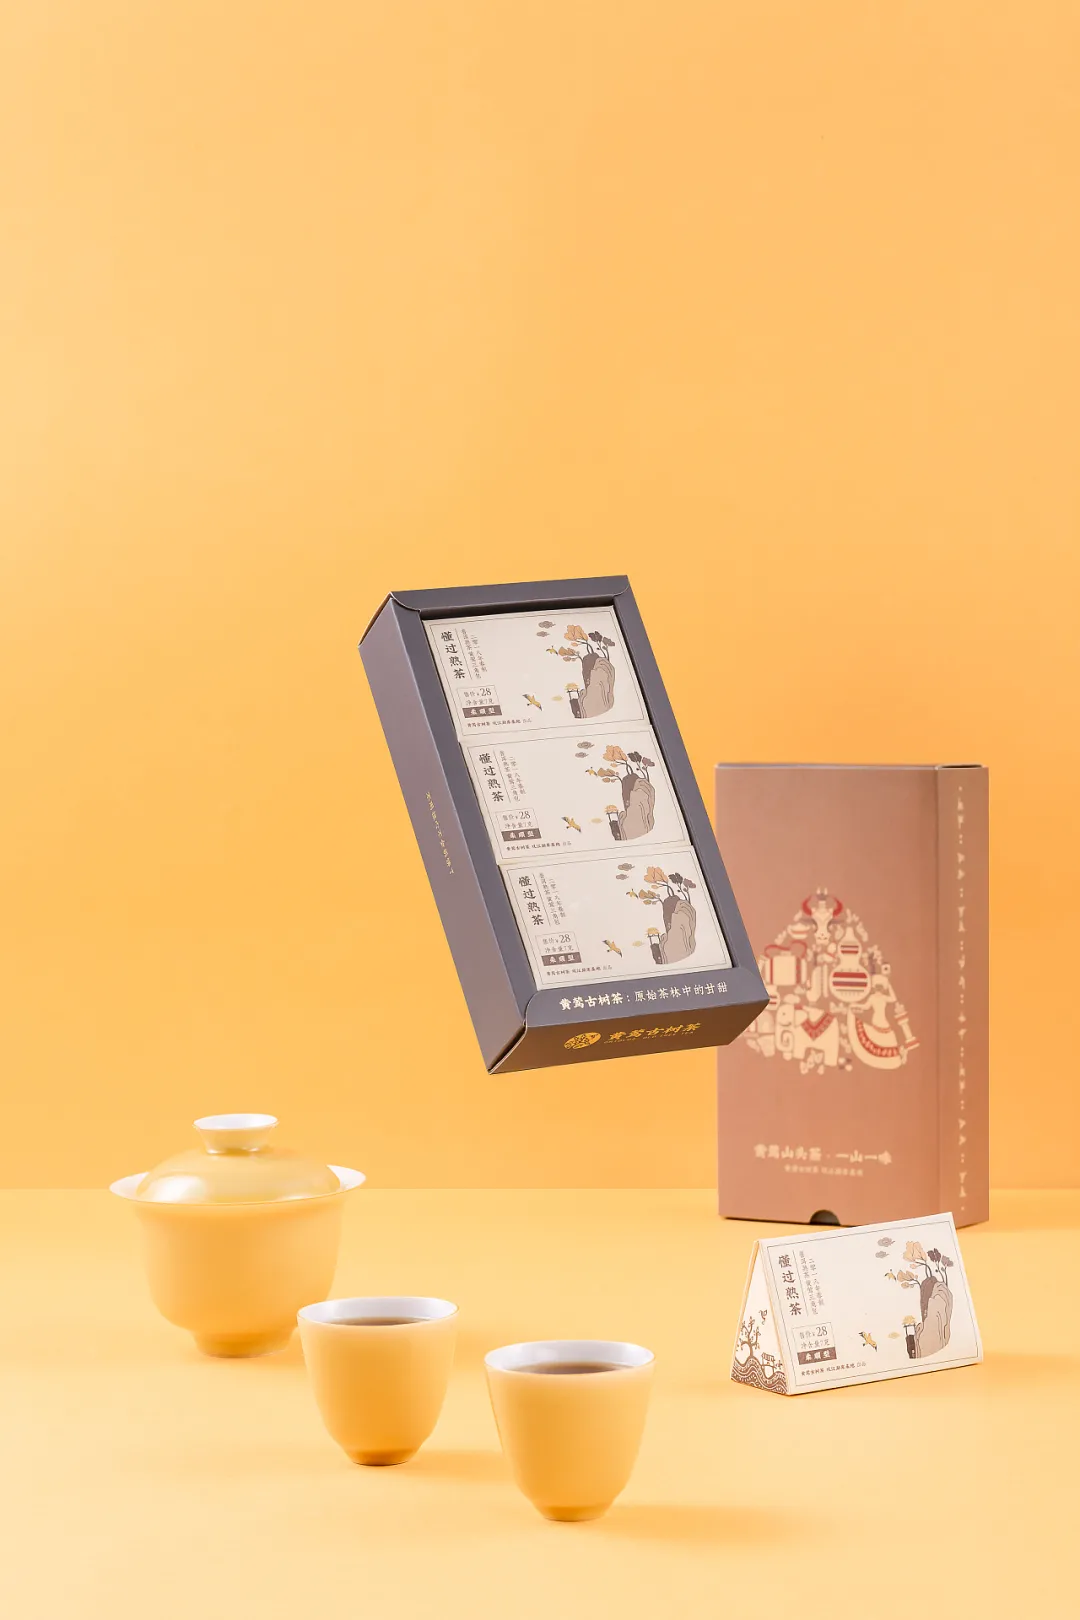 好看的茶叶包装设计，大大的激发了人们mai茶叶的欲望